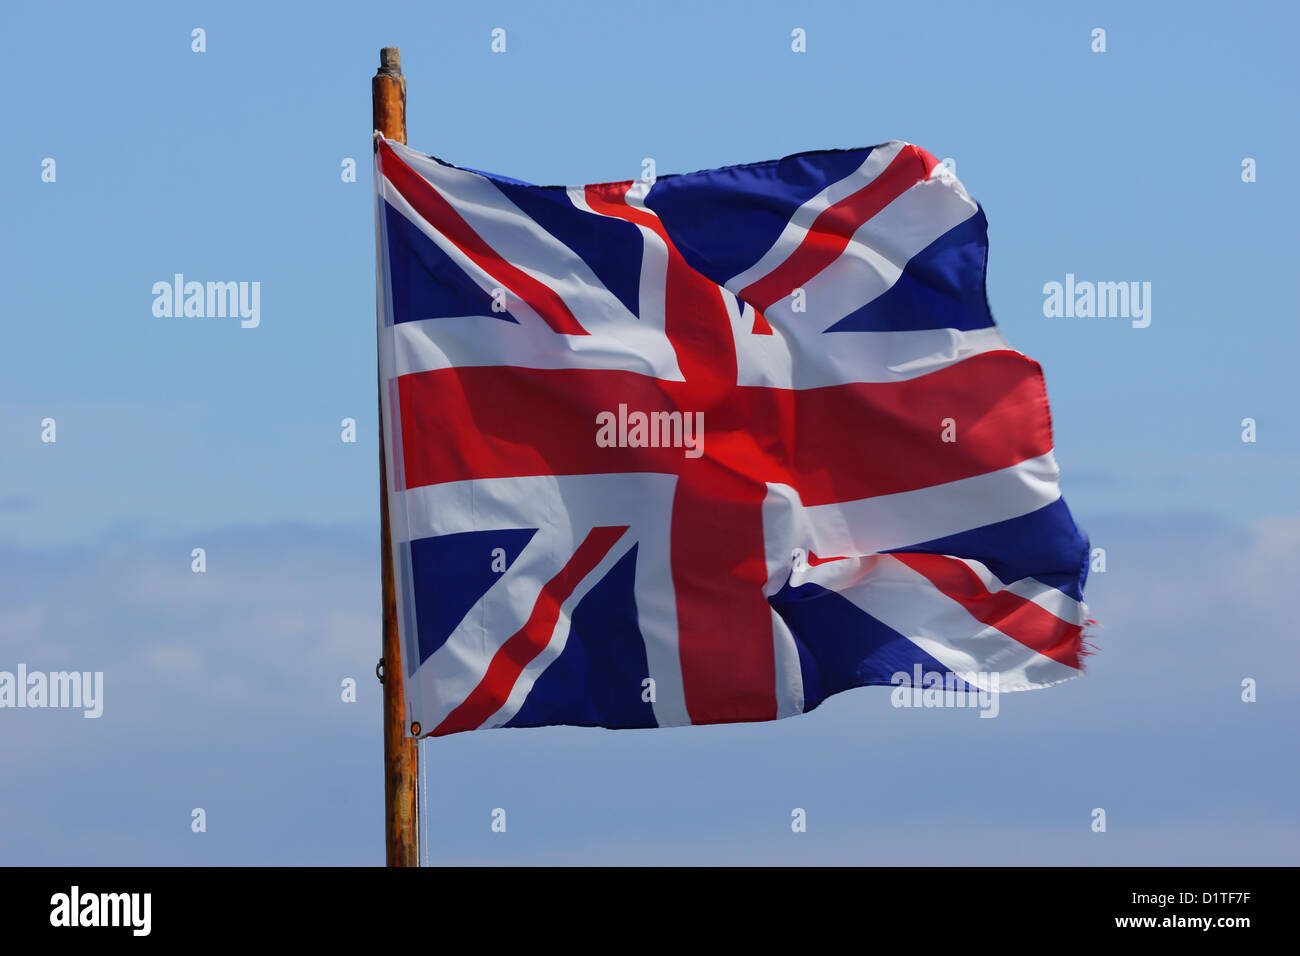 Bandiera britannica / Unione Jack al vento contro un cielo blu Foto Stock